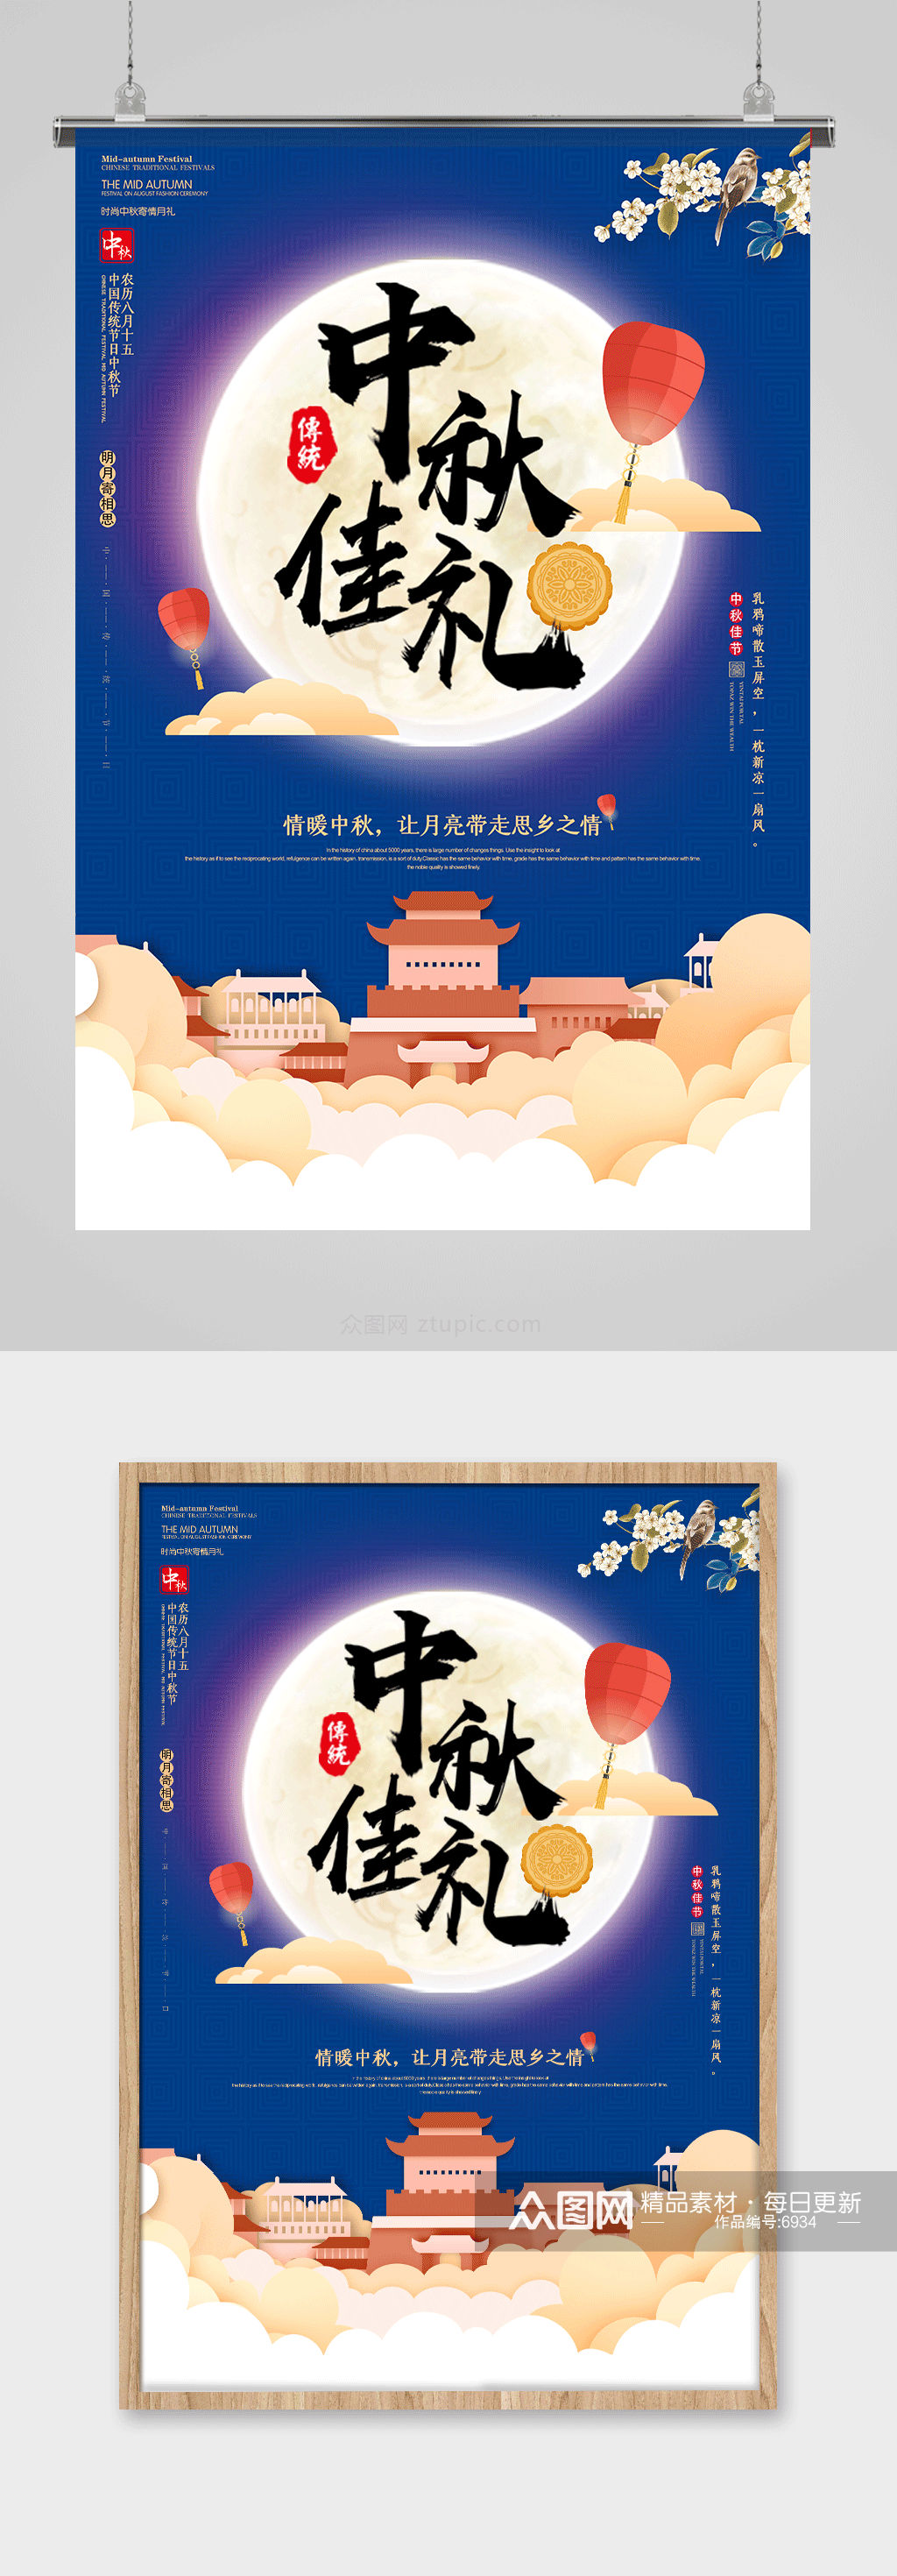 大气时尚传统节日中秋节海报设计素材